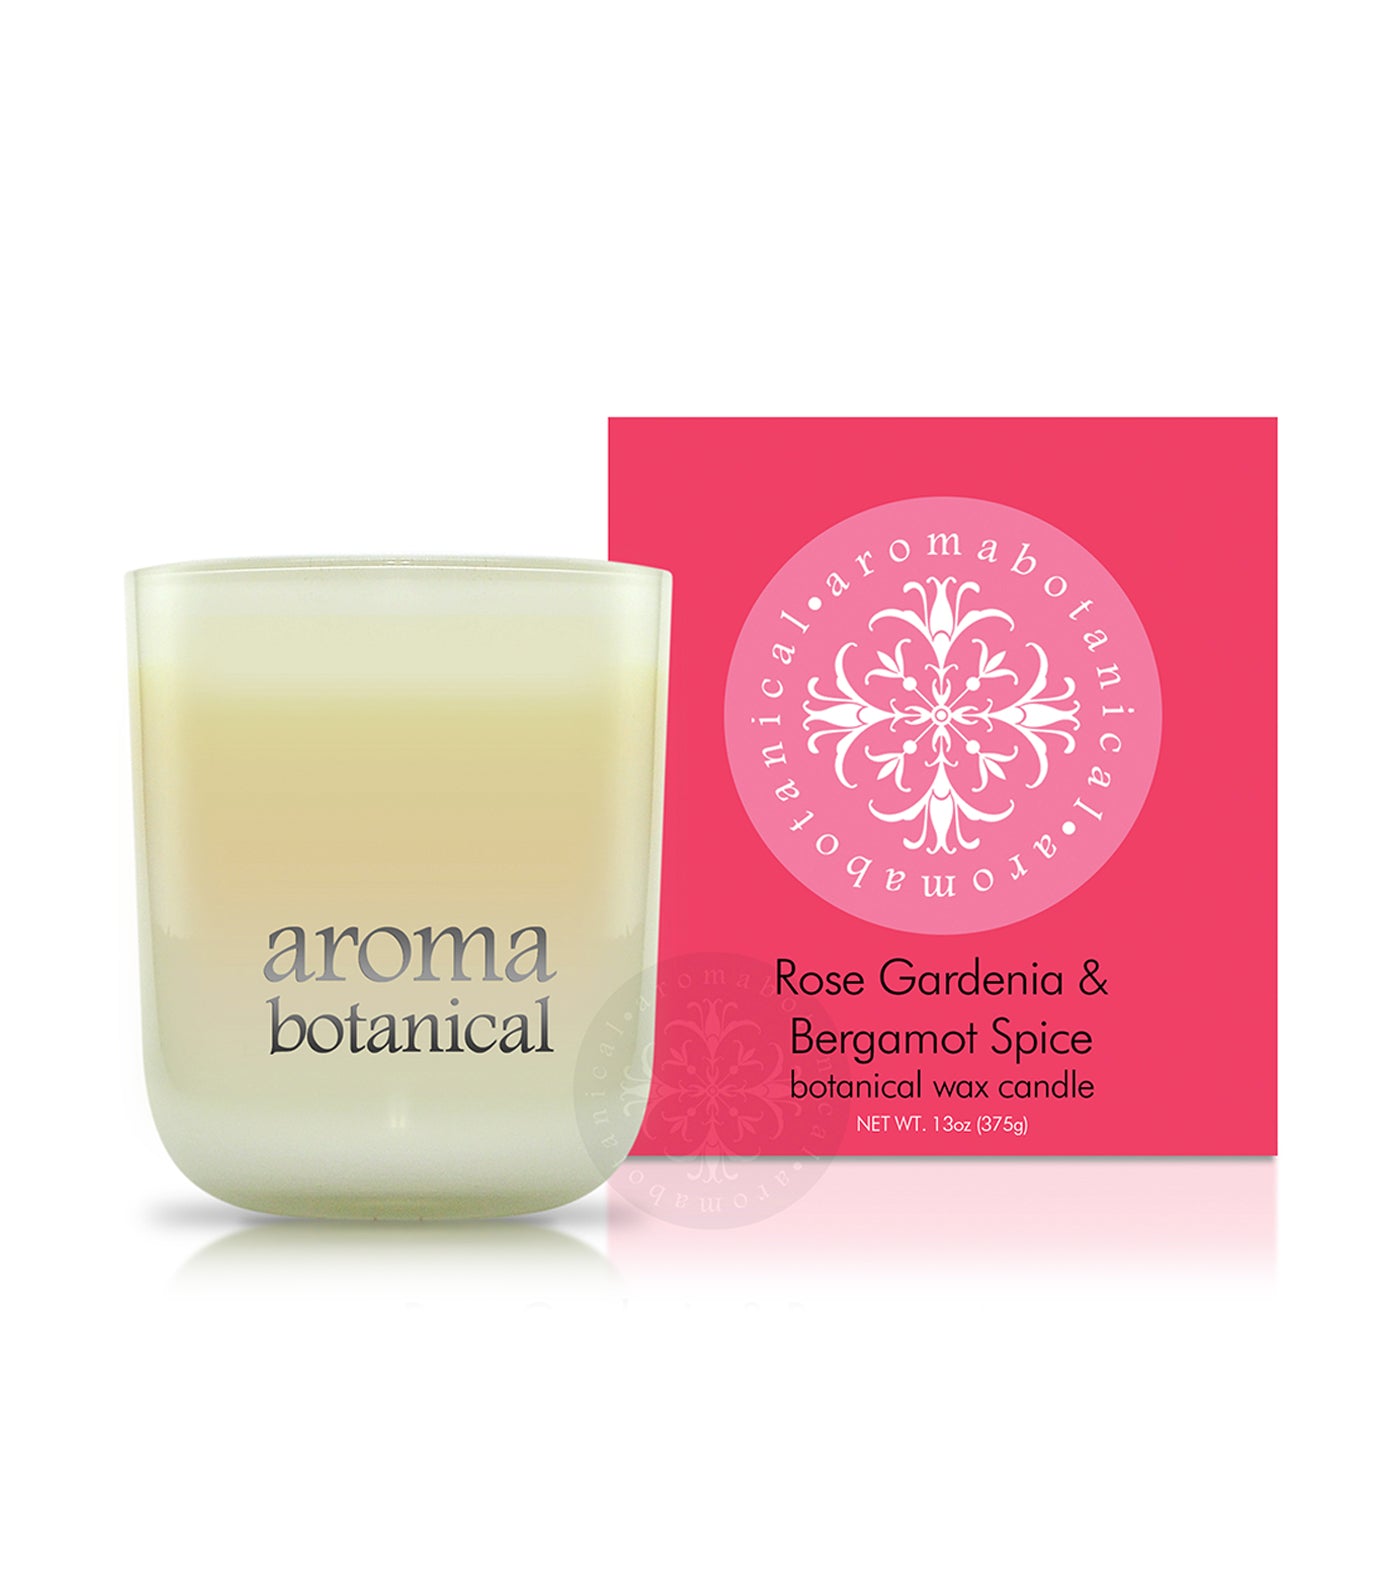 aromabotanical rose, gardenia & bergamot spice 375g candle